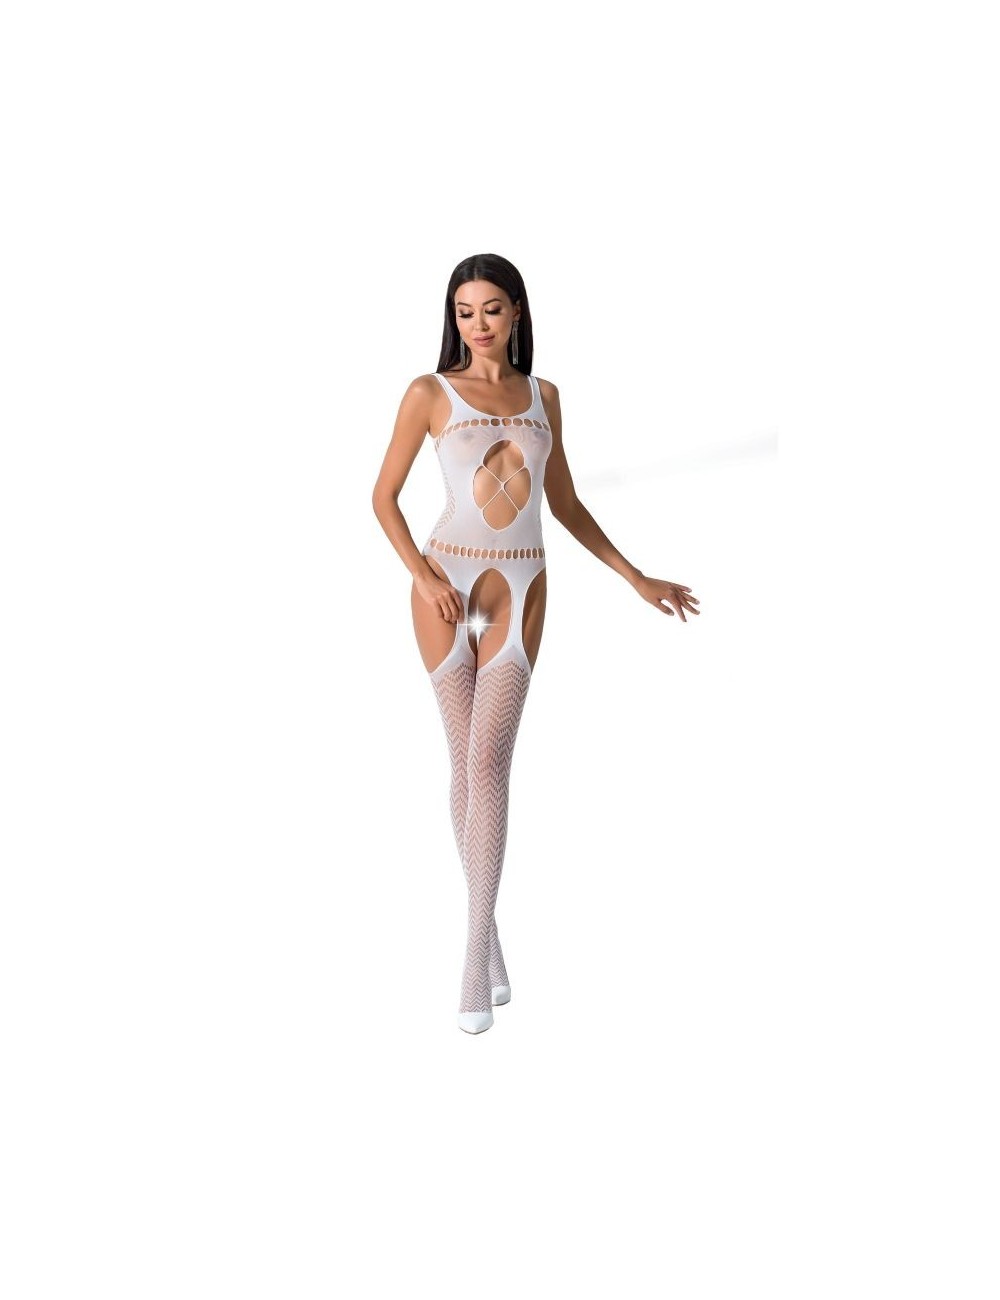 Lingerie - Combinaisons - Passion woman bs057 bodystocking blanc taille unique - Passion Woman Bodystockings